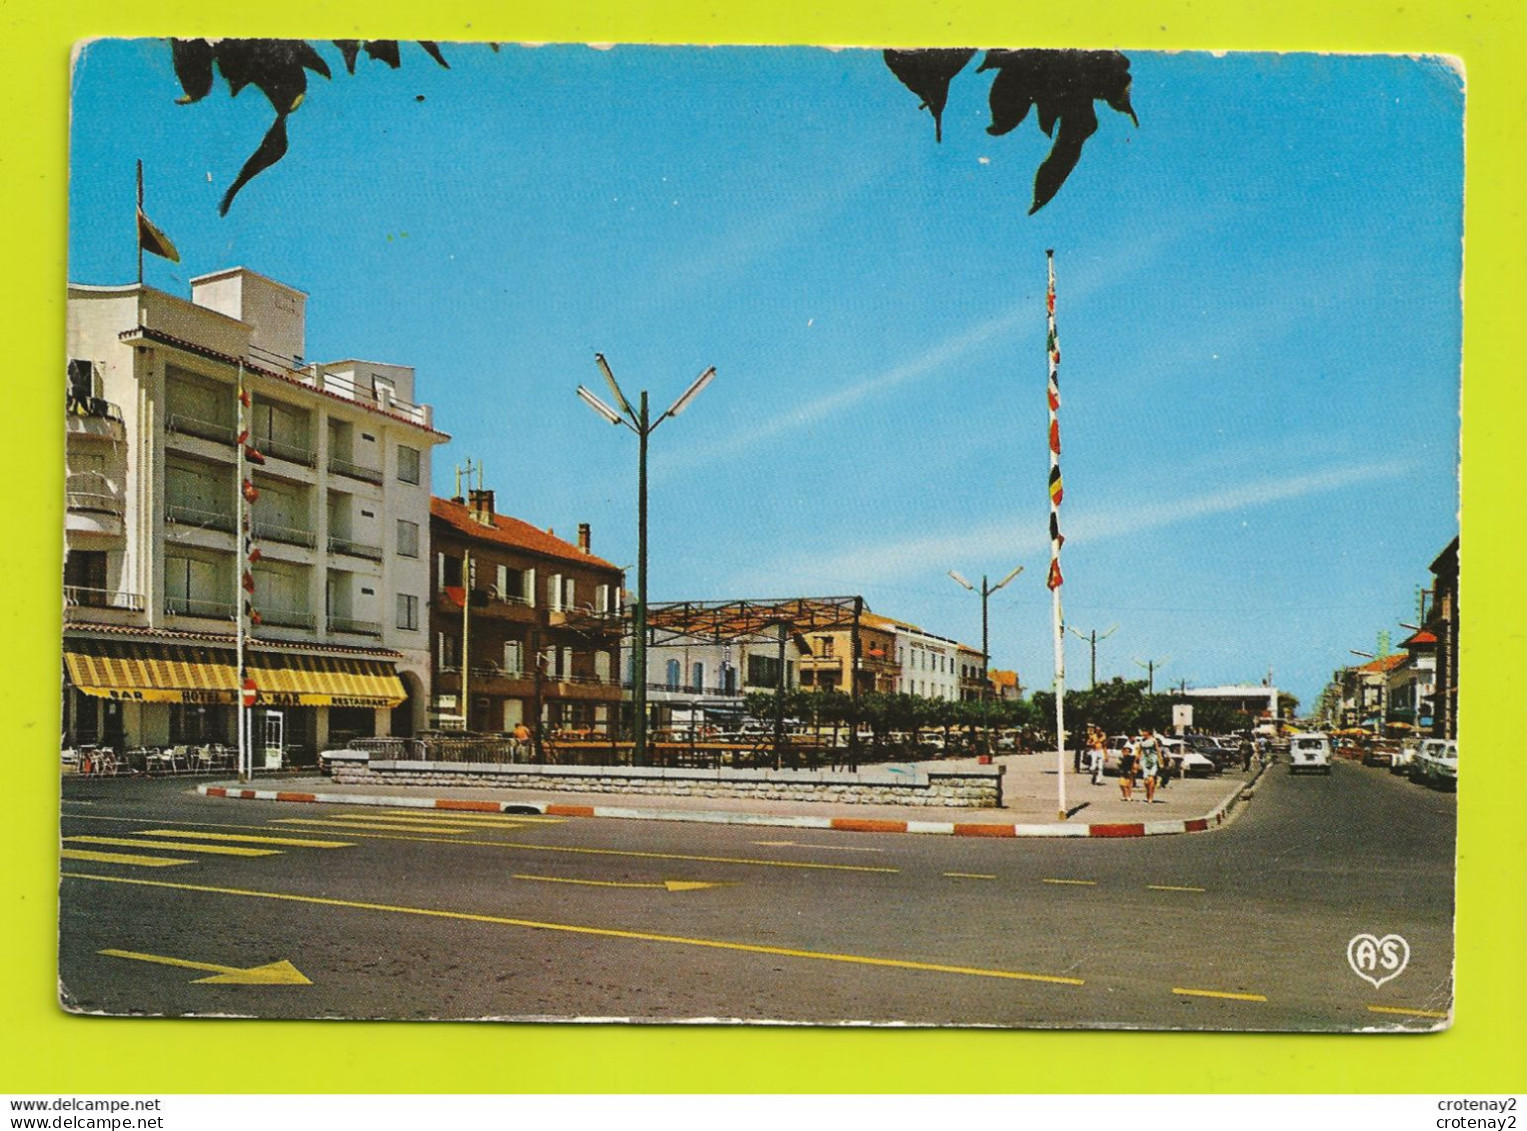 34 VALRAS PLAGE Vers Béziers N1022 Promenade Front De Mer Hôtel Bar Restaurant En 1969 Renault 4L Camionnette Citroën DS - Beziers